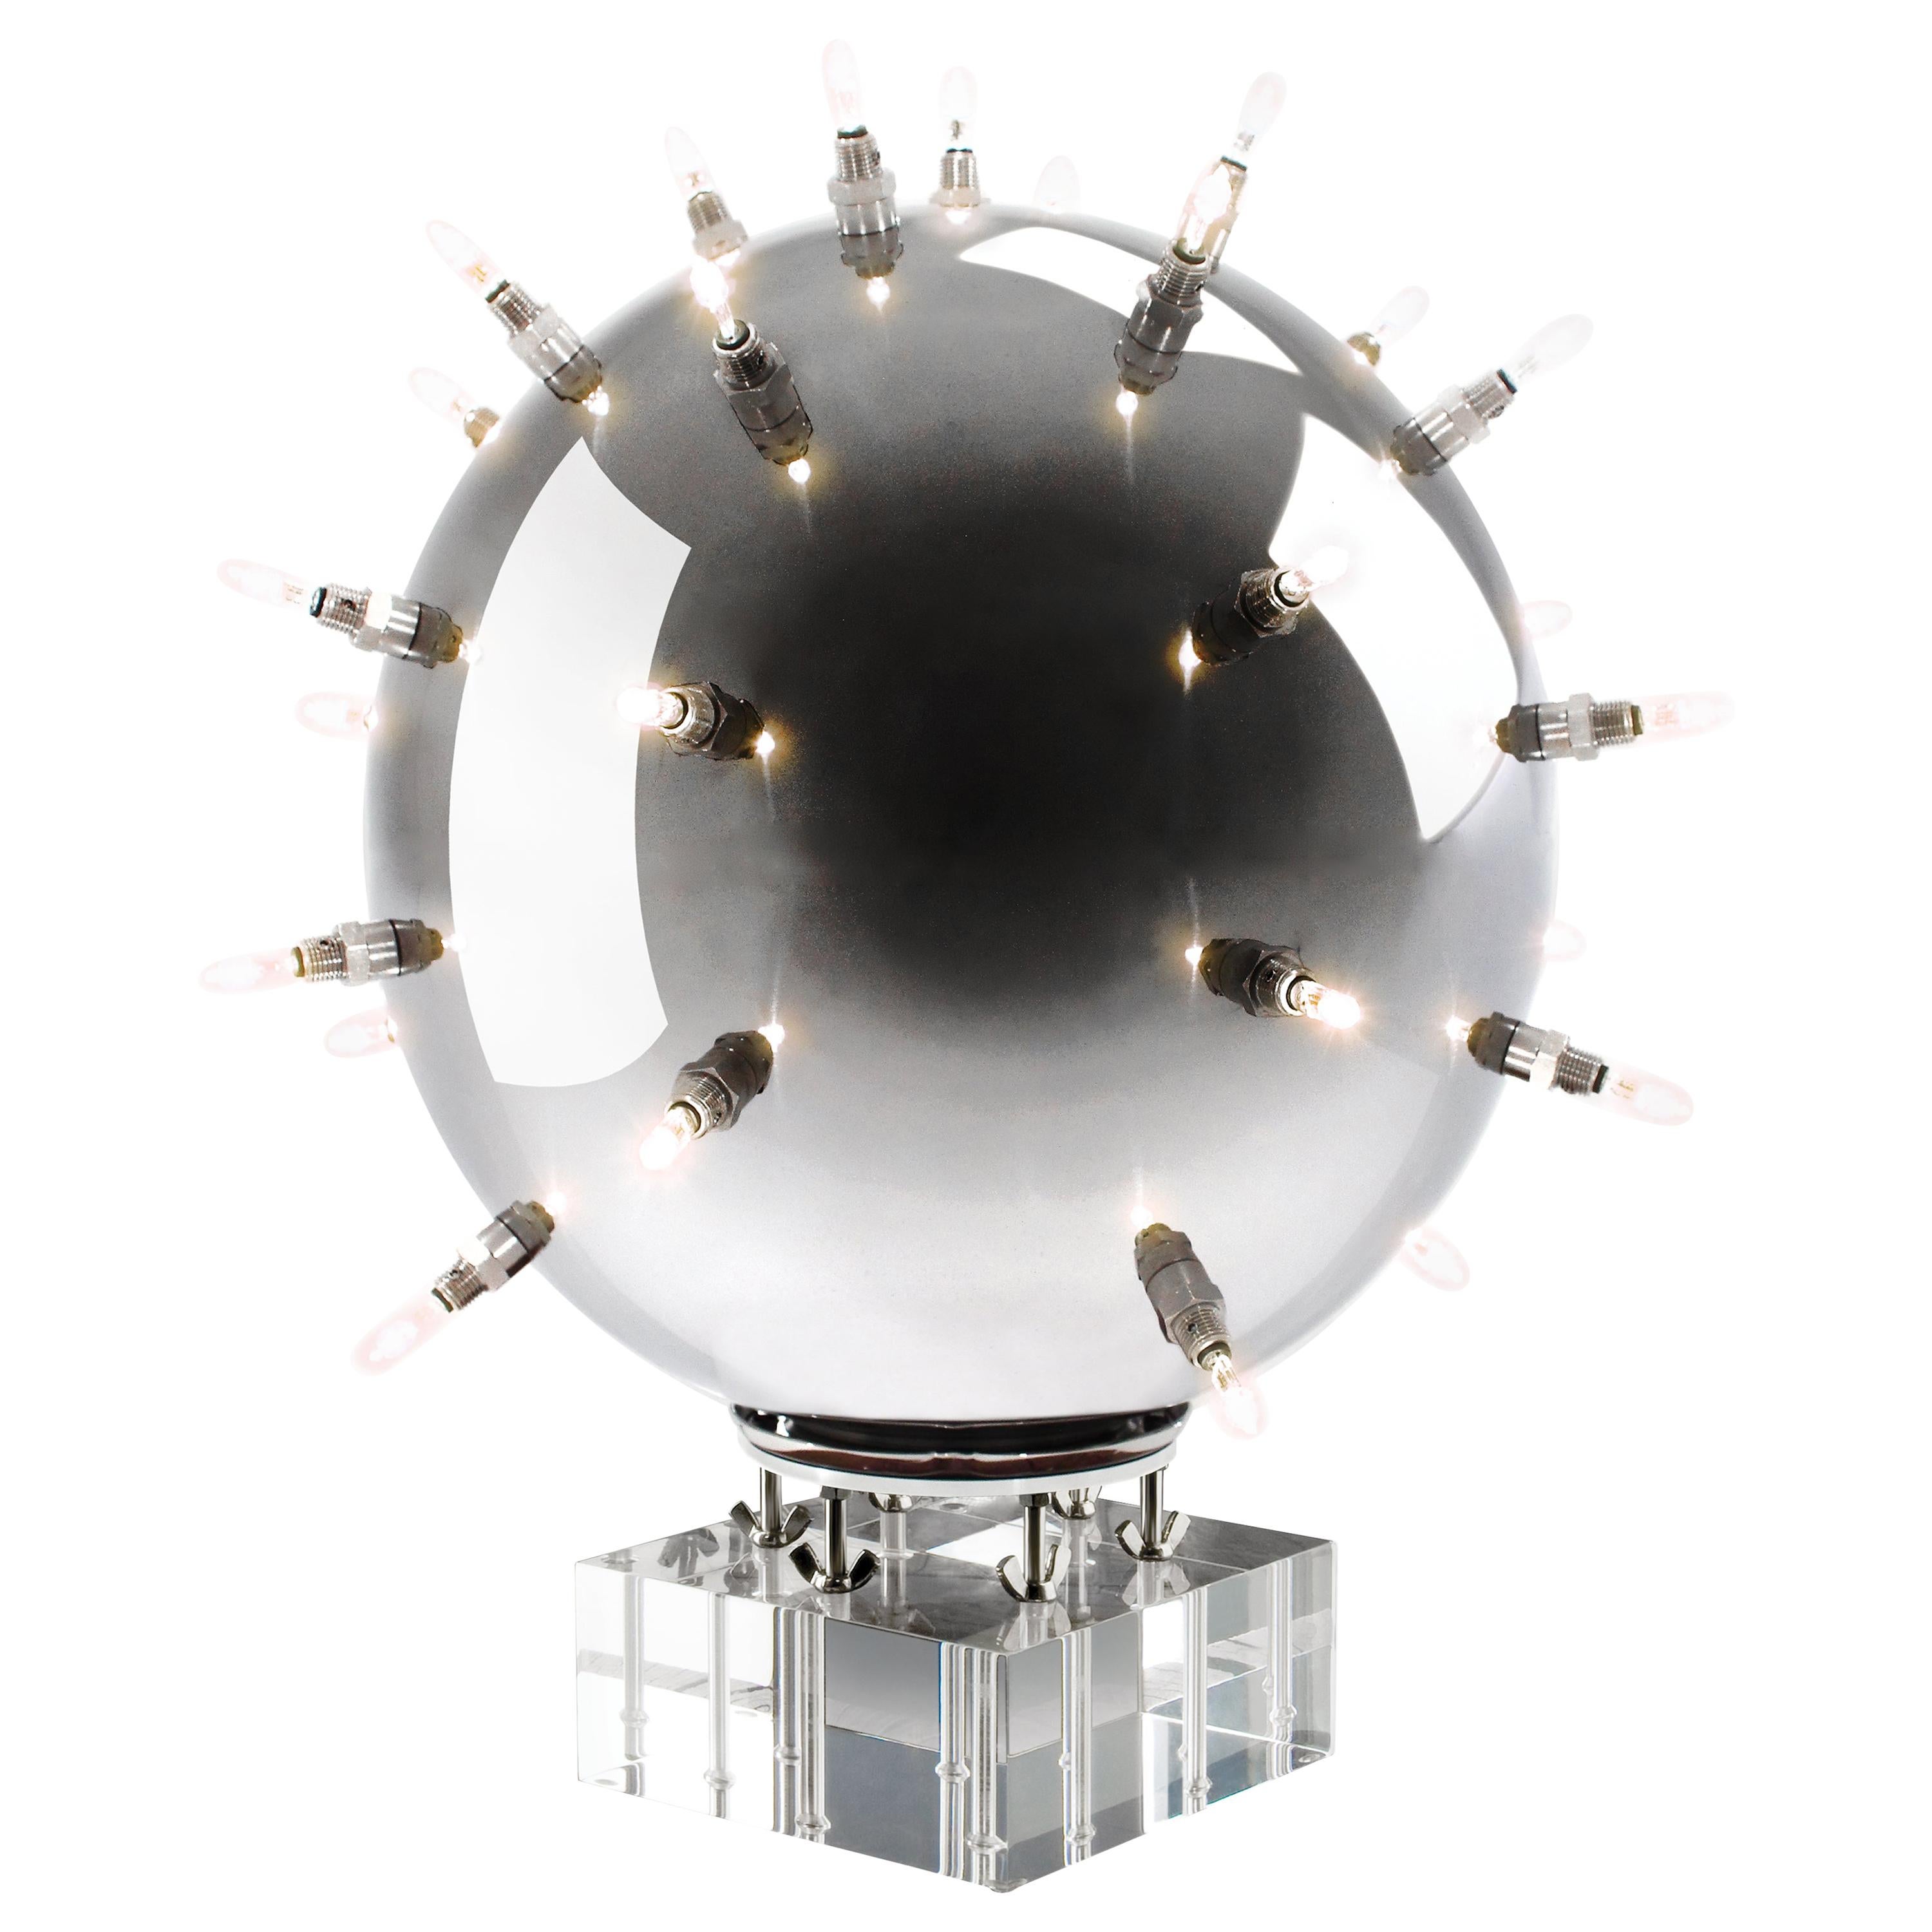 Tischlampe Sputnik Sphäre Spiegel Polierter Stahl Colletible Design Handgemacht Italien